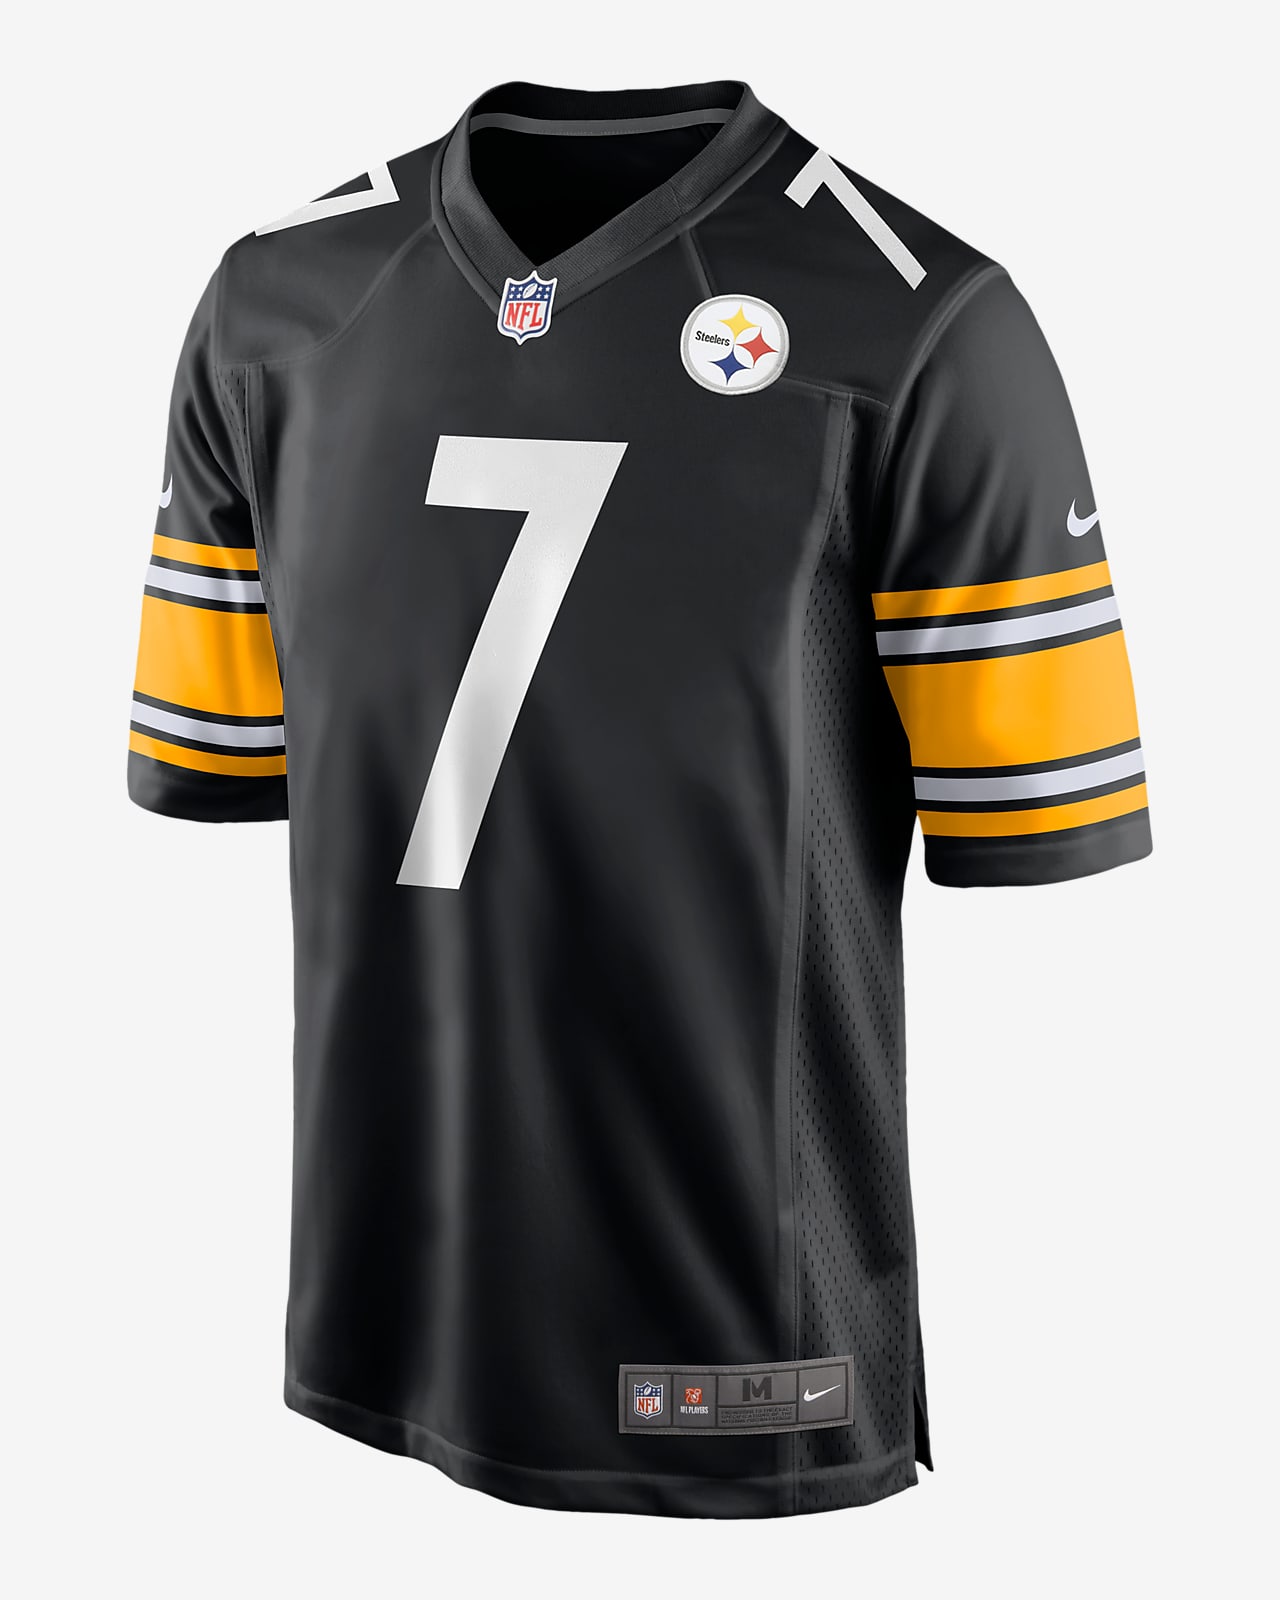 Męska koszulka meczowa do futbolu amerykańskiego NFL Pittsburgh Steelers (Ben Roethlisberger)